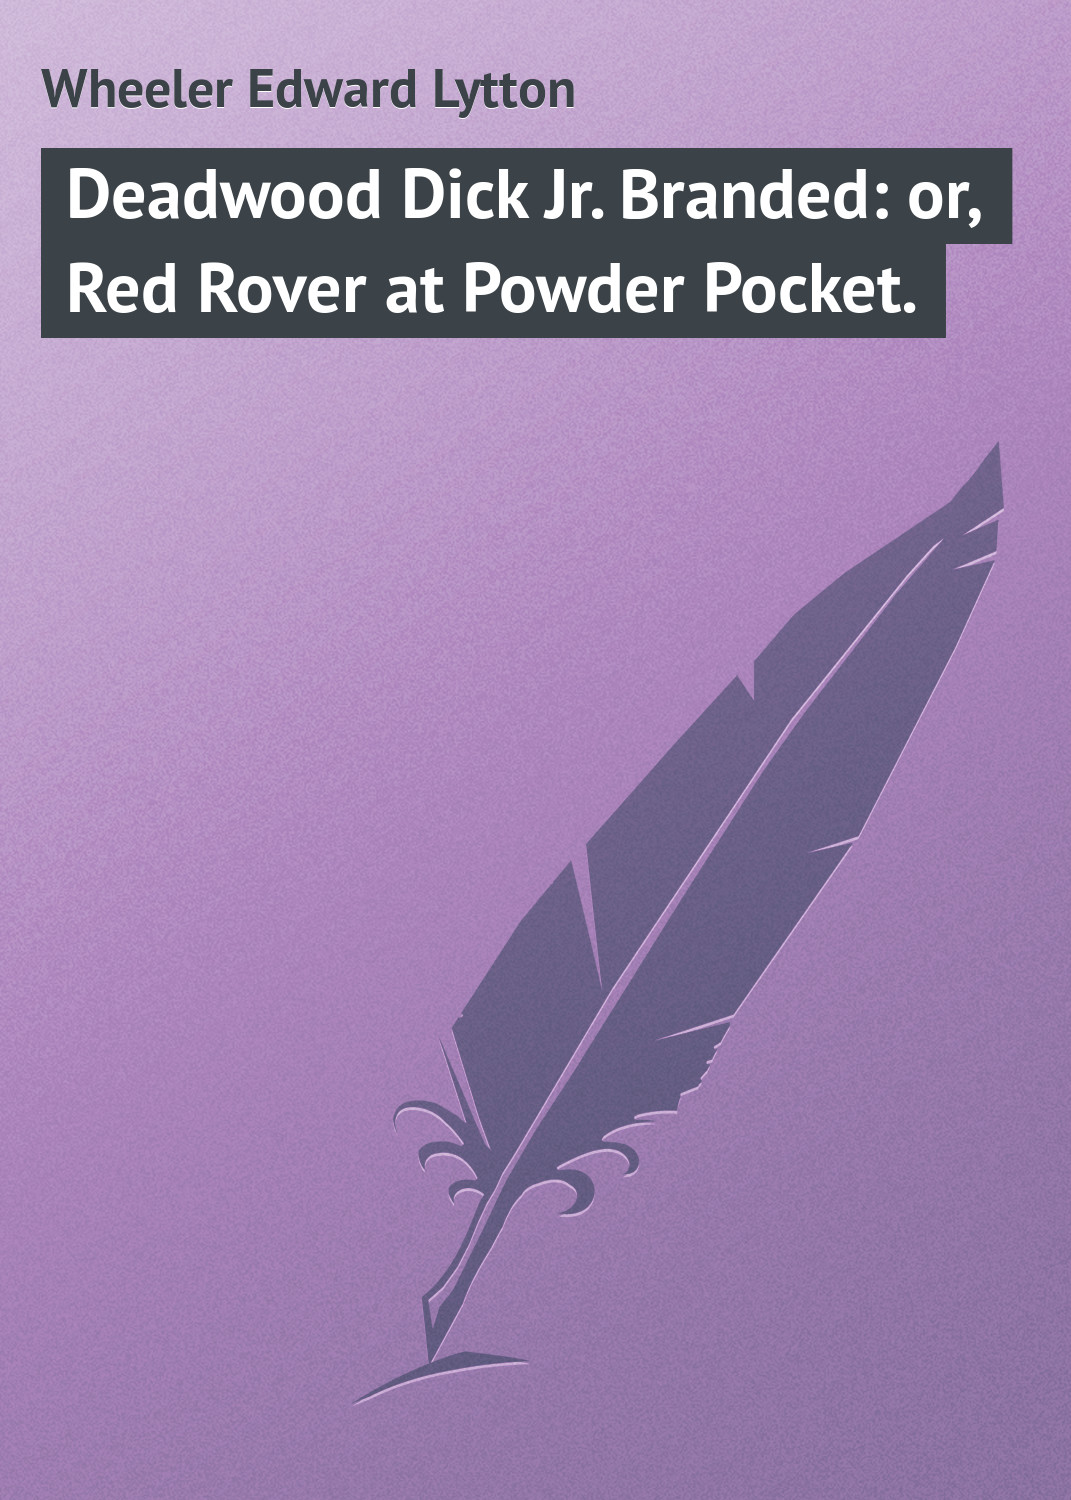 Книга Deadwood Dick Jr. Branded: or, Red Rover at Powder Pocket. из серии , созданная Edward Wheeler, может относится к жанру Зарубежная классика. Стоимость электронной книги Deadwood Dick Jr. Branded: or, Red Rover at Powder Pocket. с идентификатором 23165419 составляет 5.99 руб.